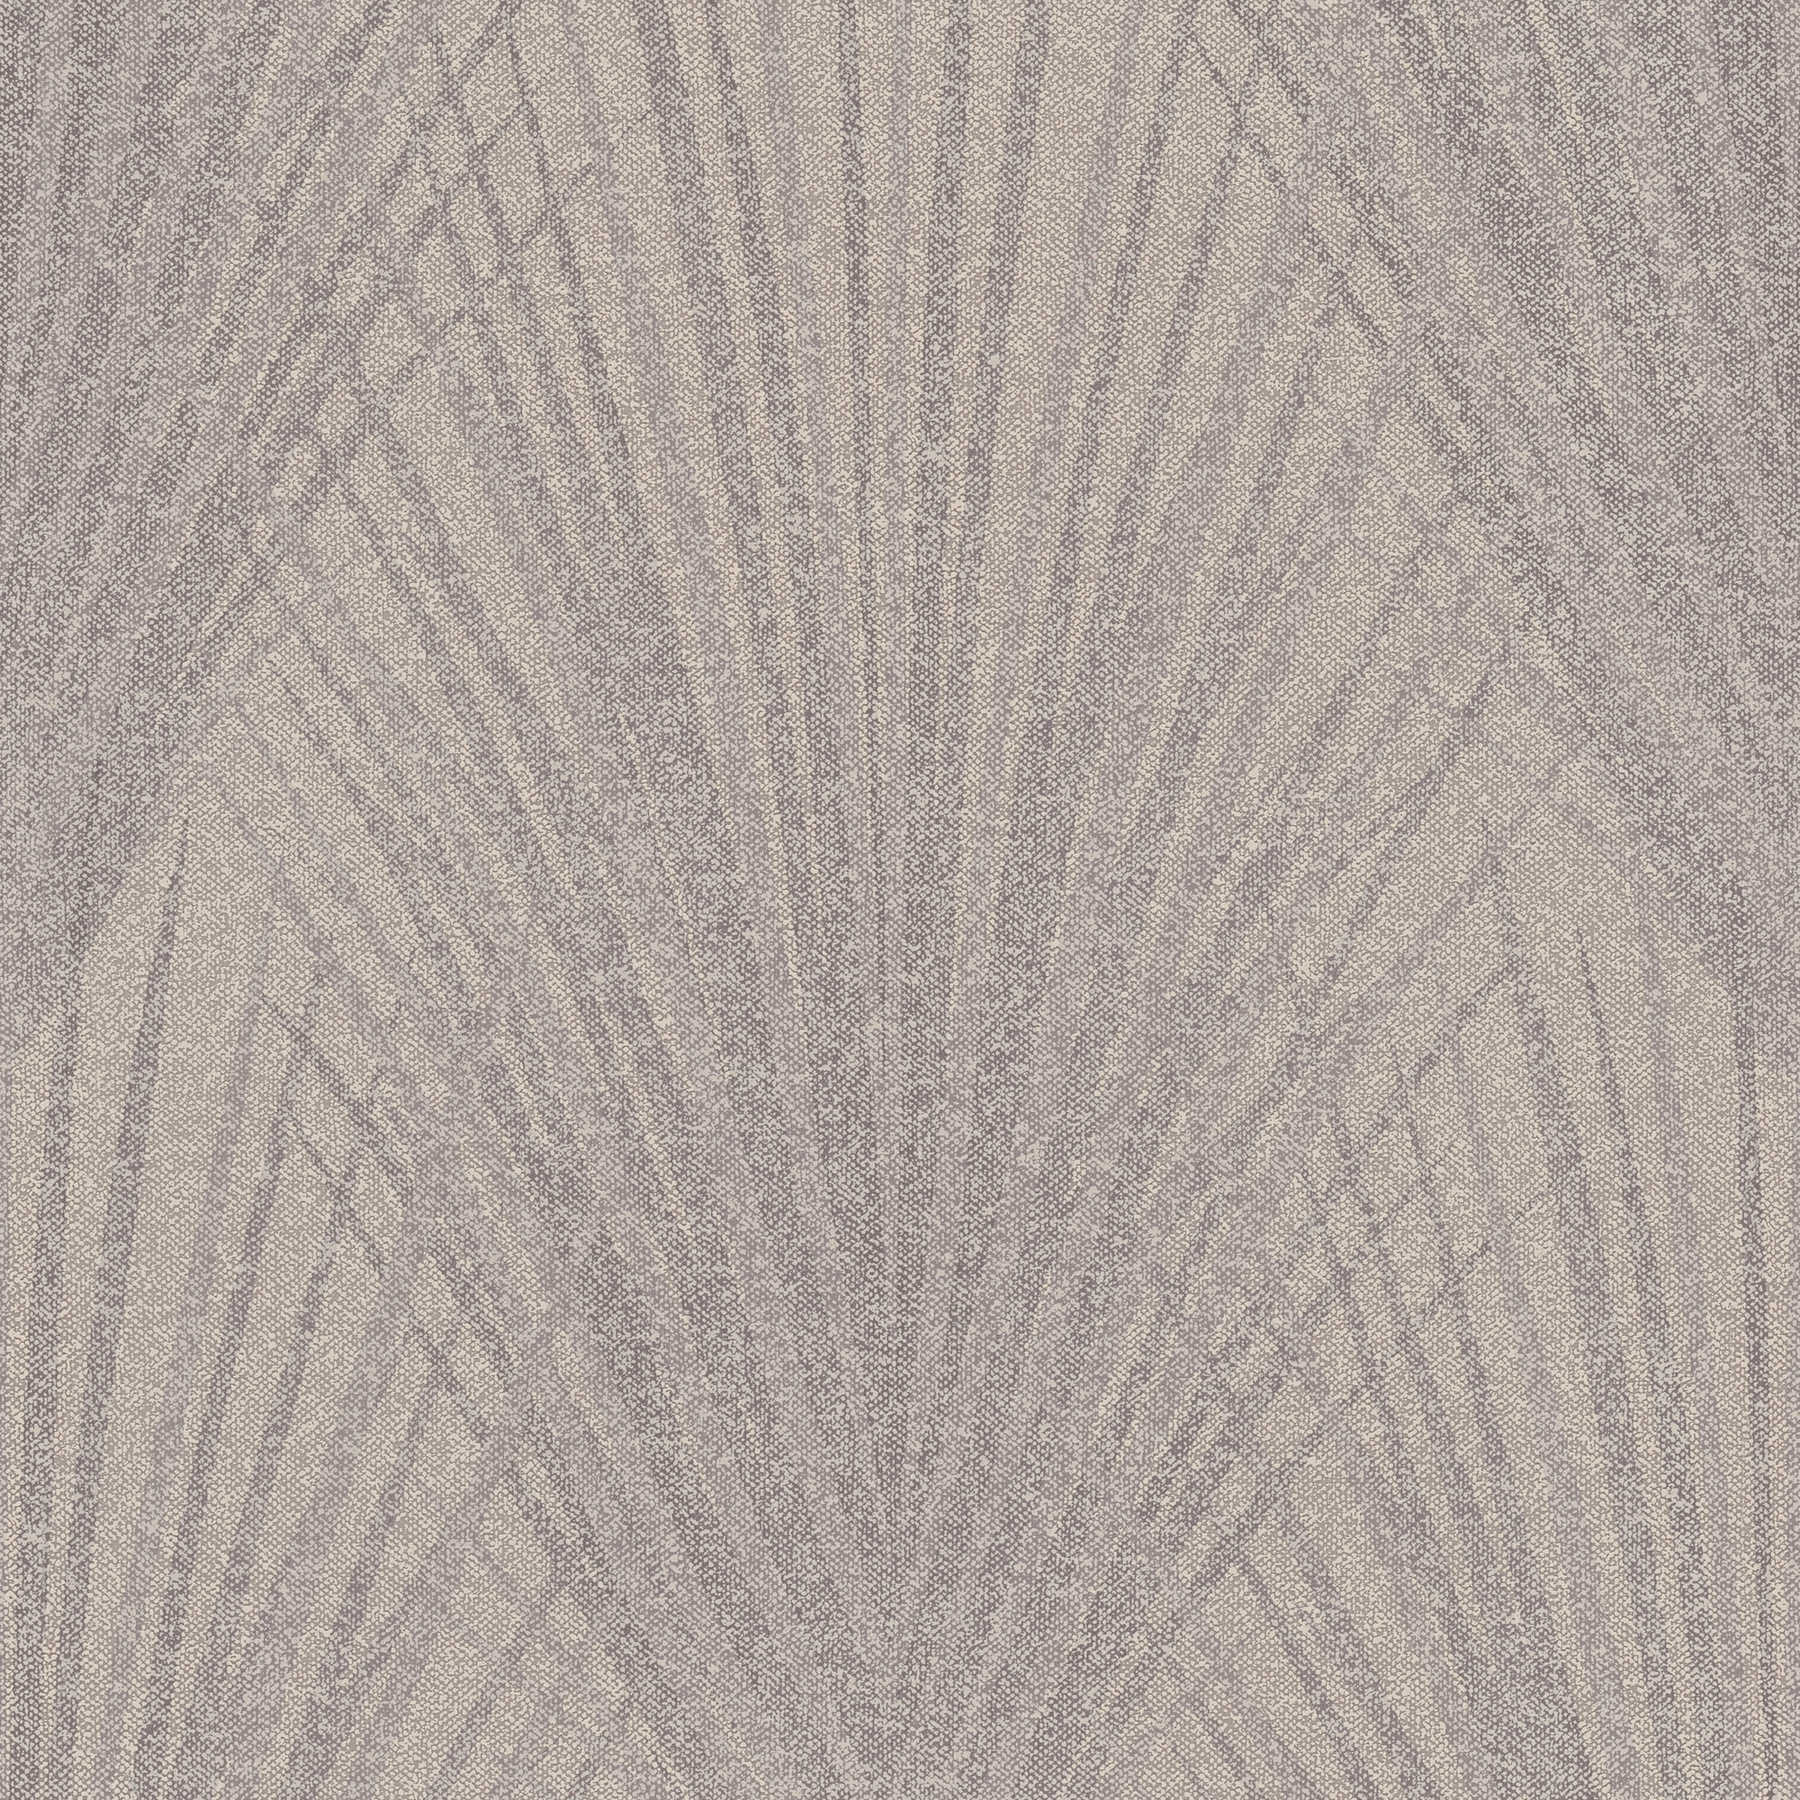 Farnblatt Mustertapete abstraktes Design – Braun, Beige
